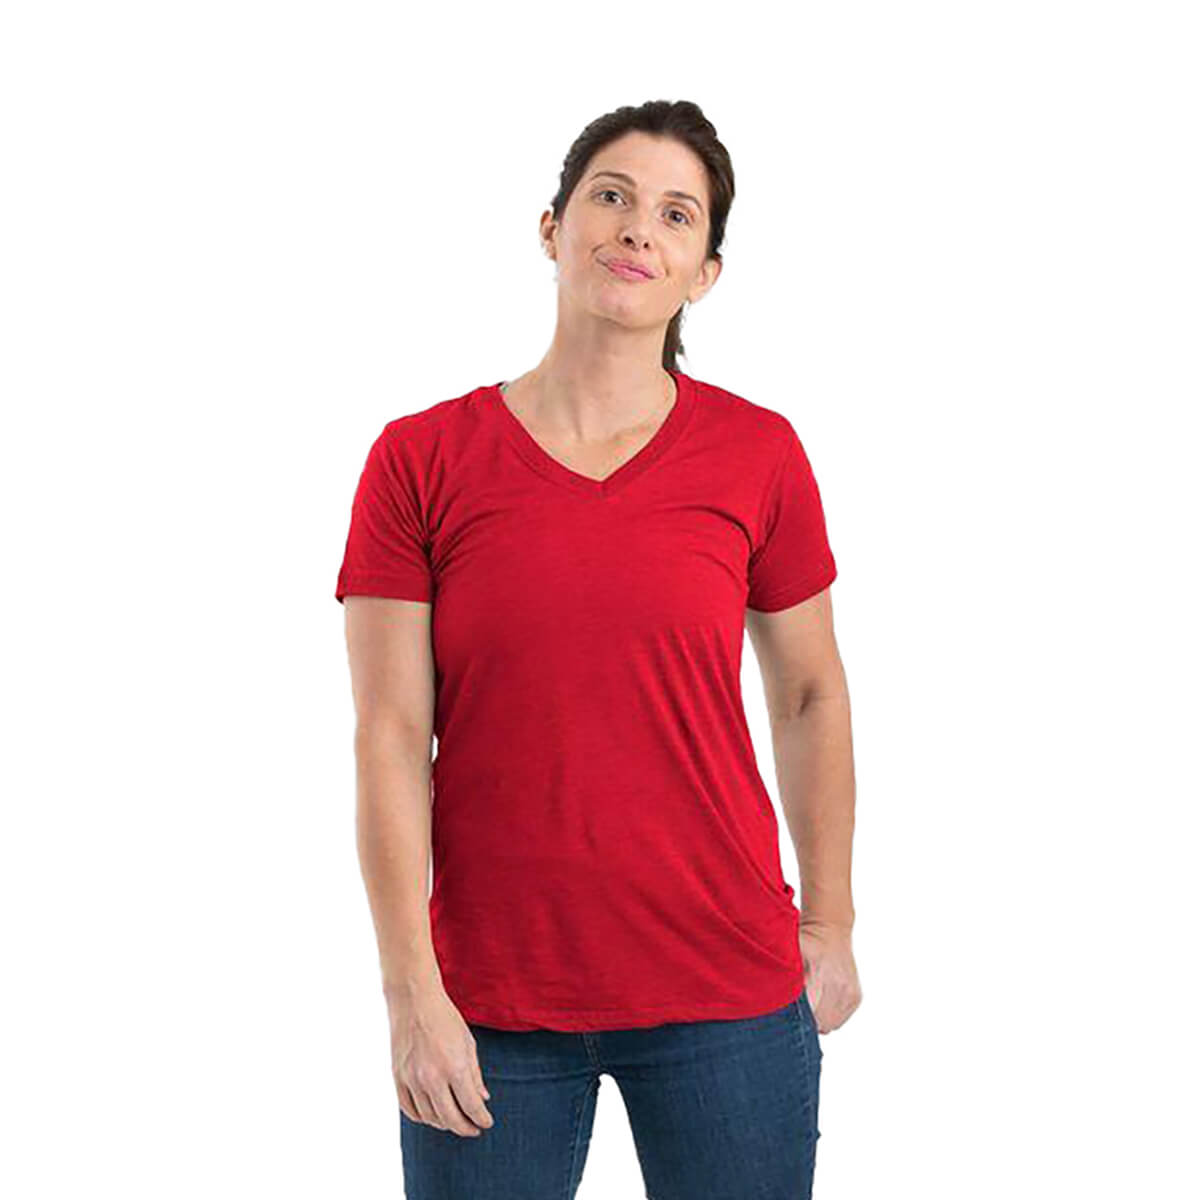 Berne Women's Performance V-Neck T-Shirt - Tomato